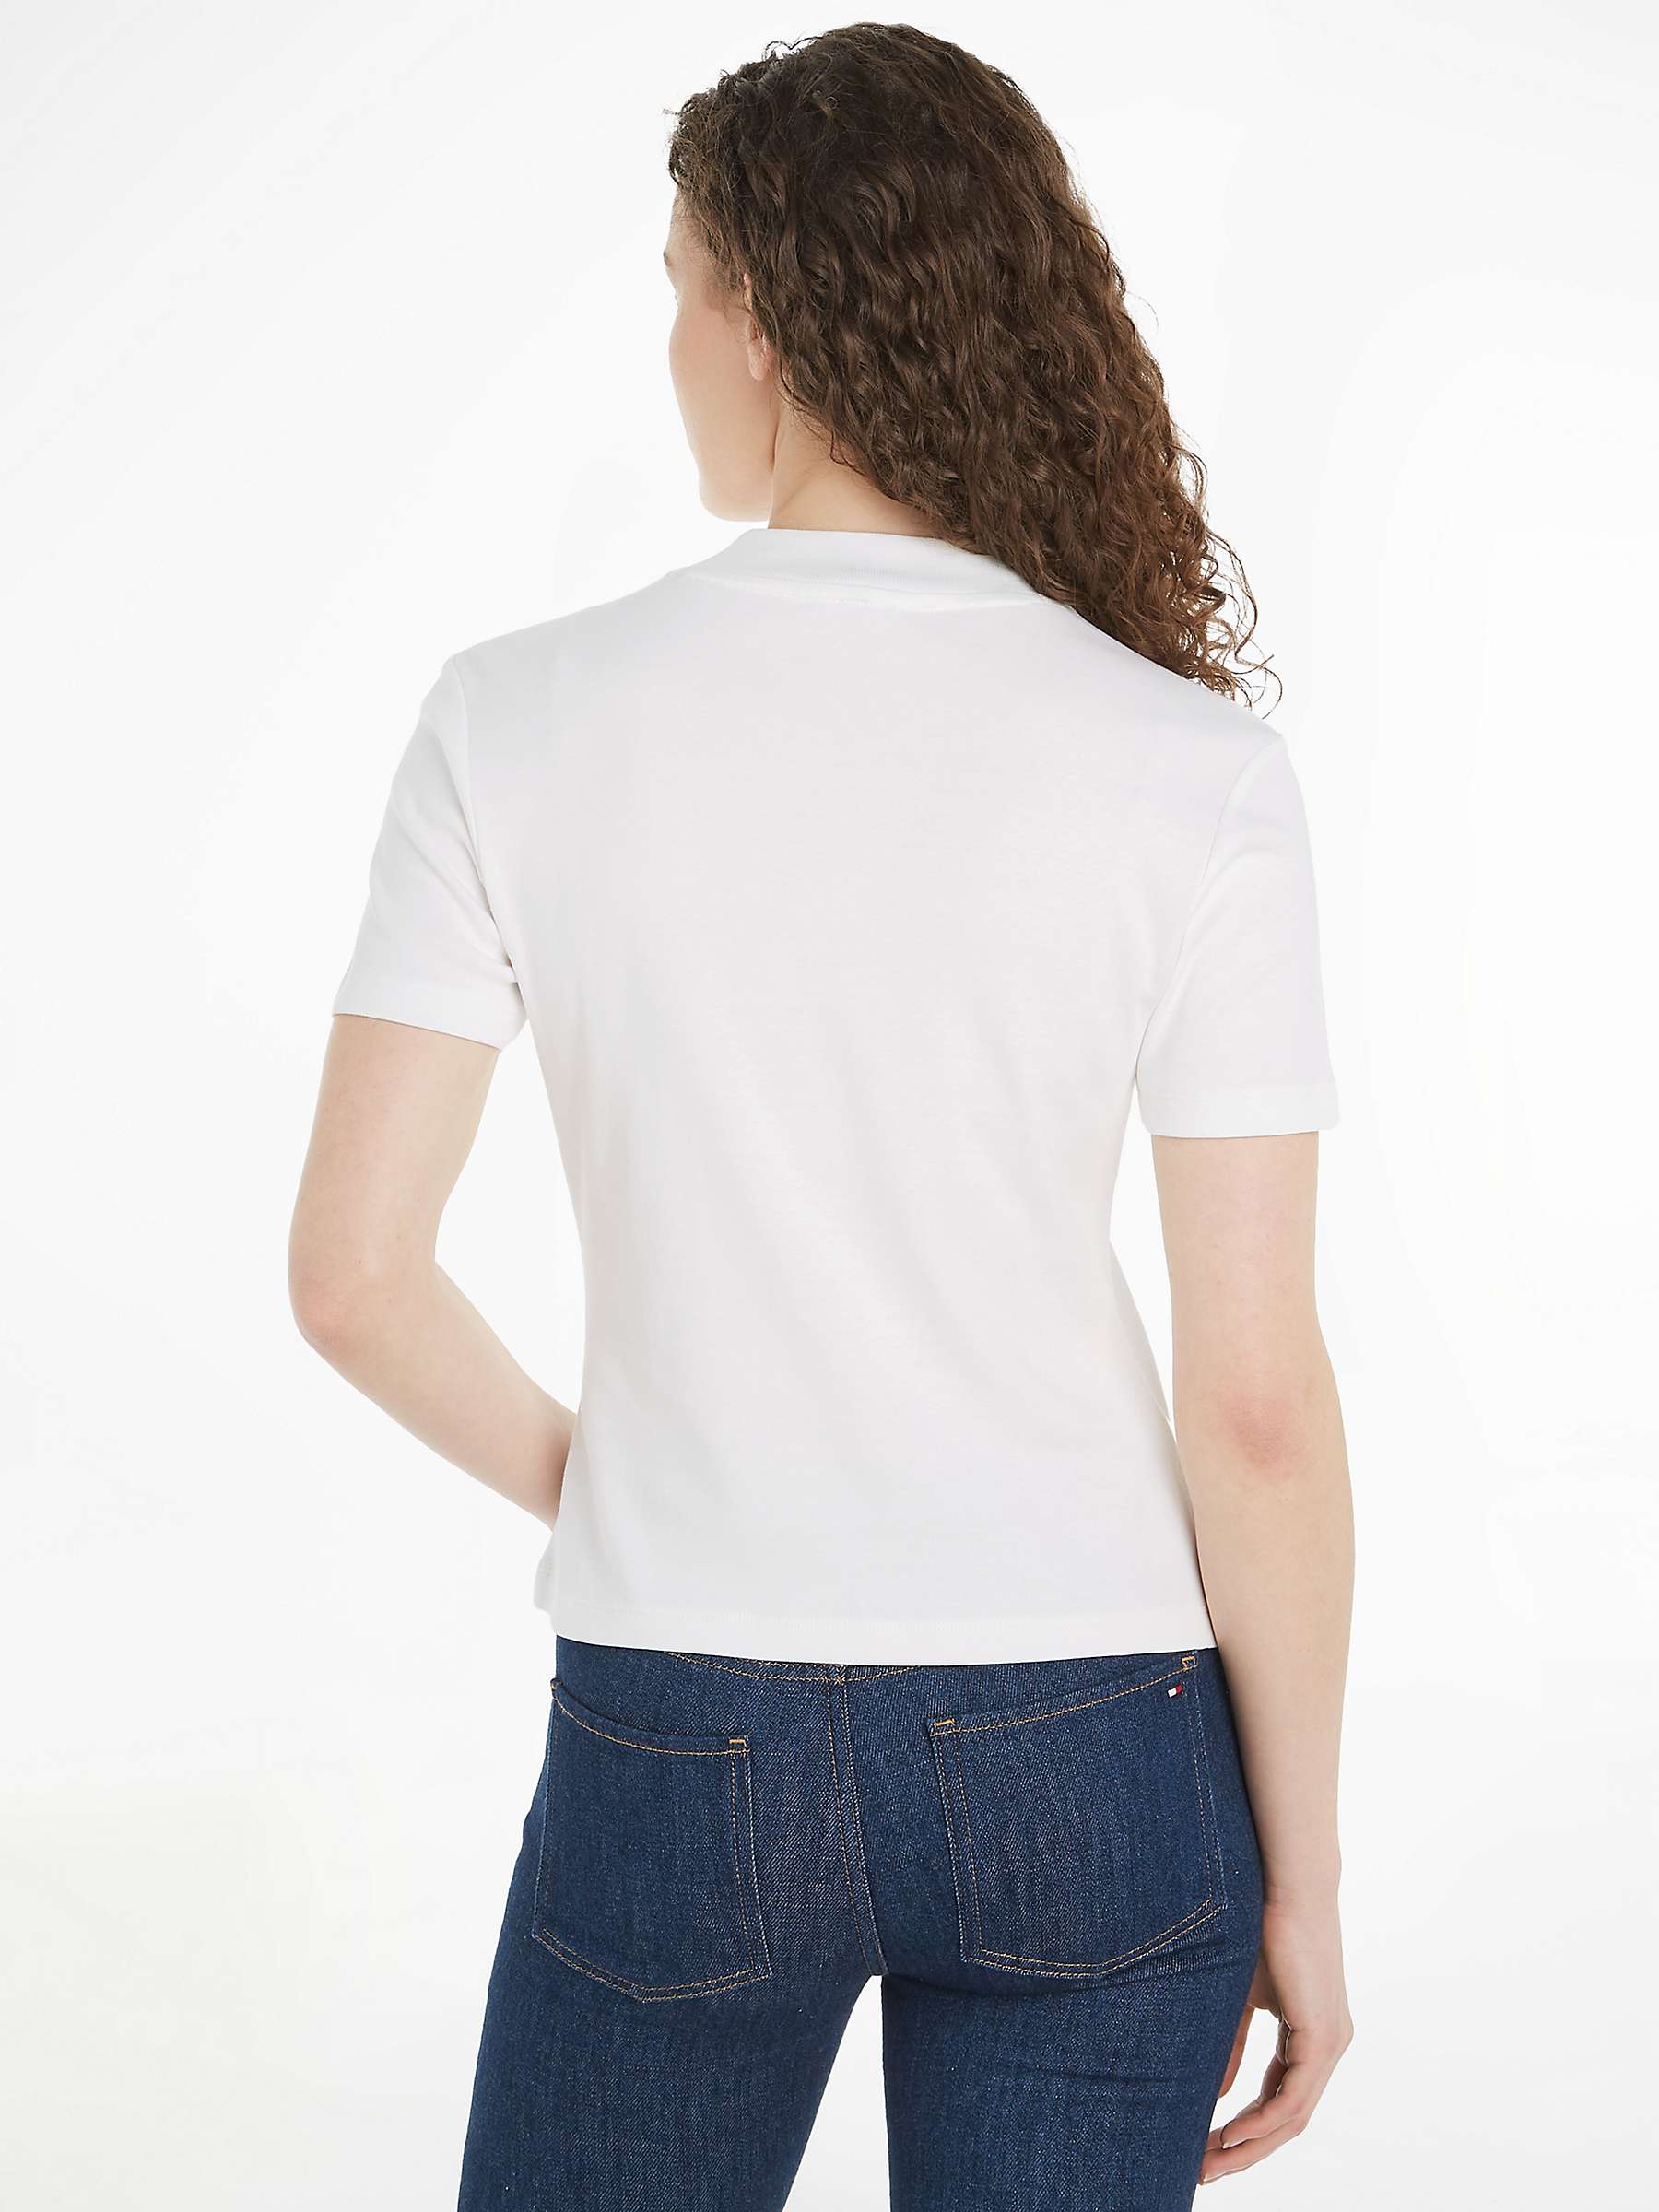 Buy Tommy Hilfiger Short Sleeve T-Shirt, Ecru Online at johnlewis.com